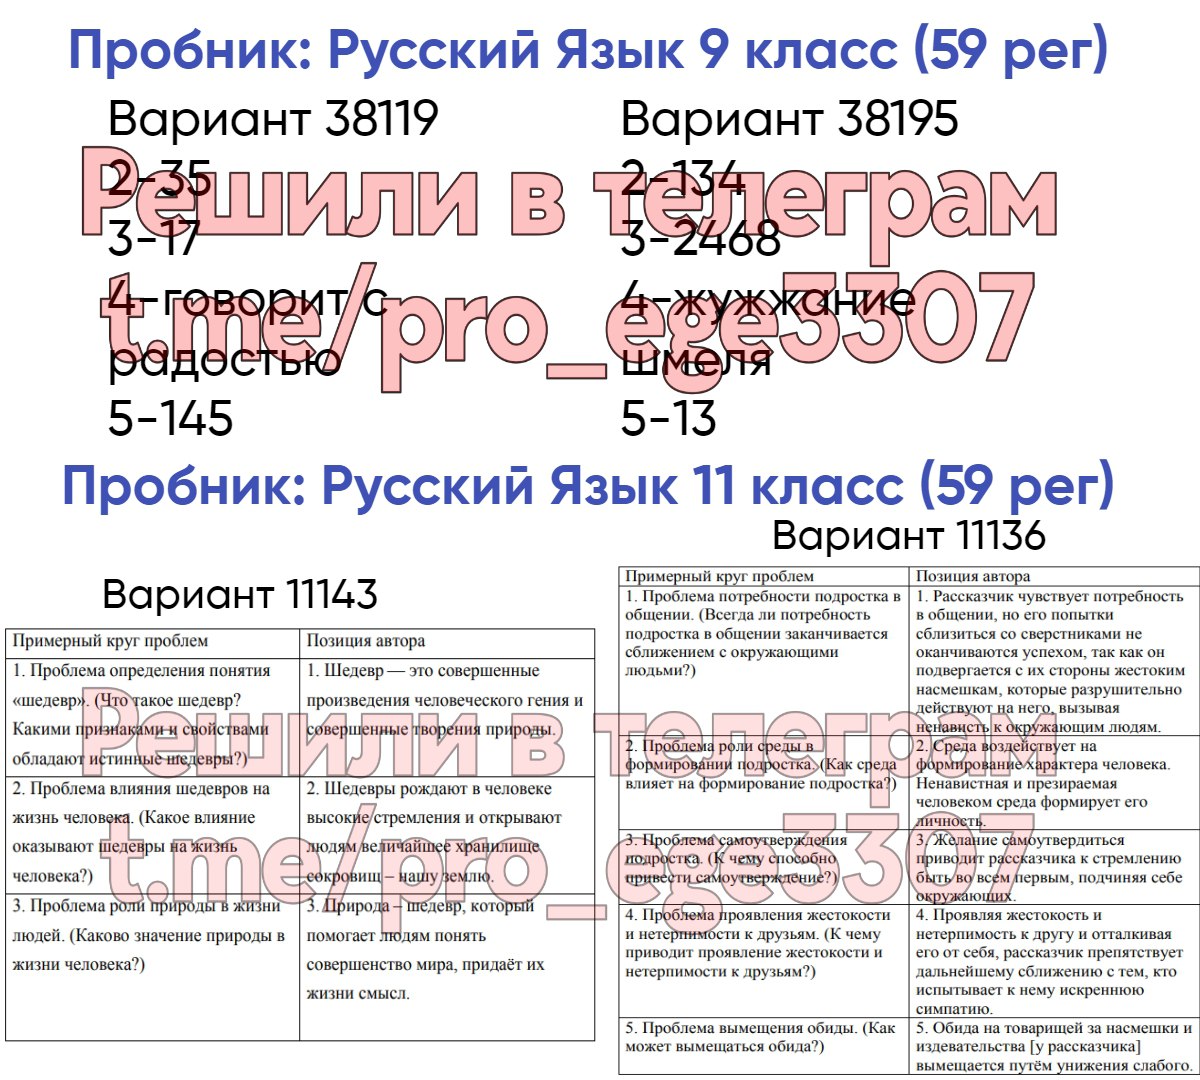 Телеграмм ответы на огэ по русскому языку фото 64